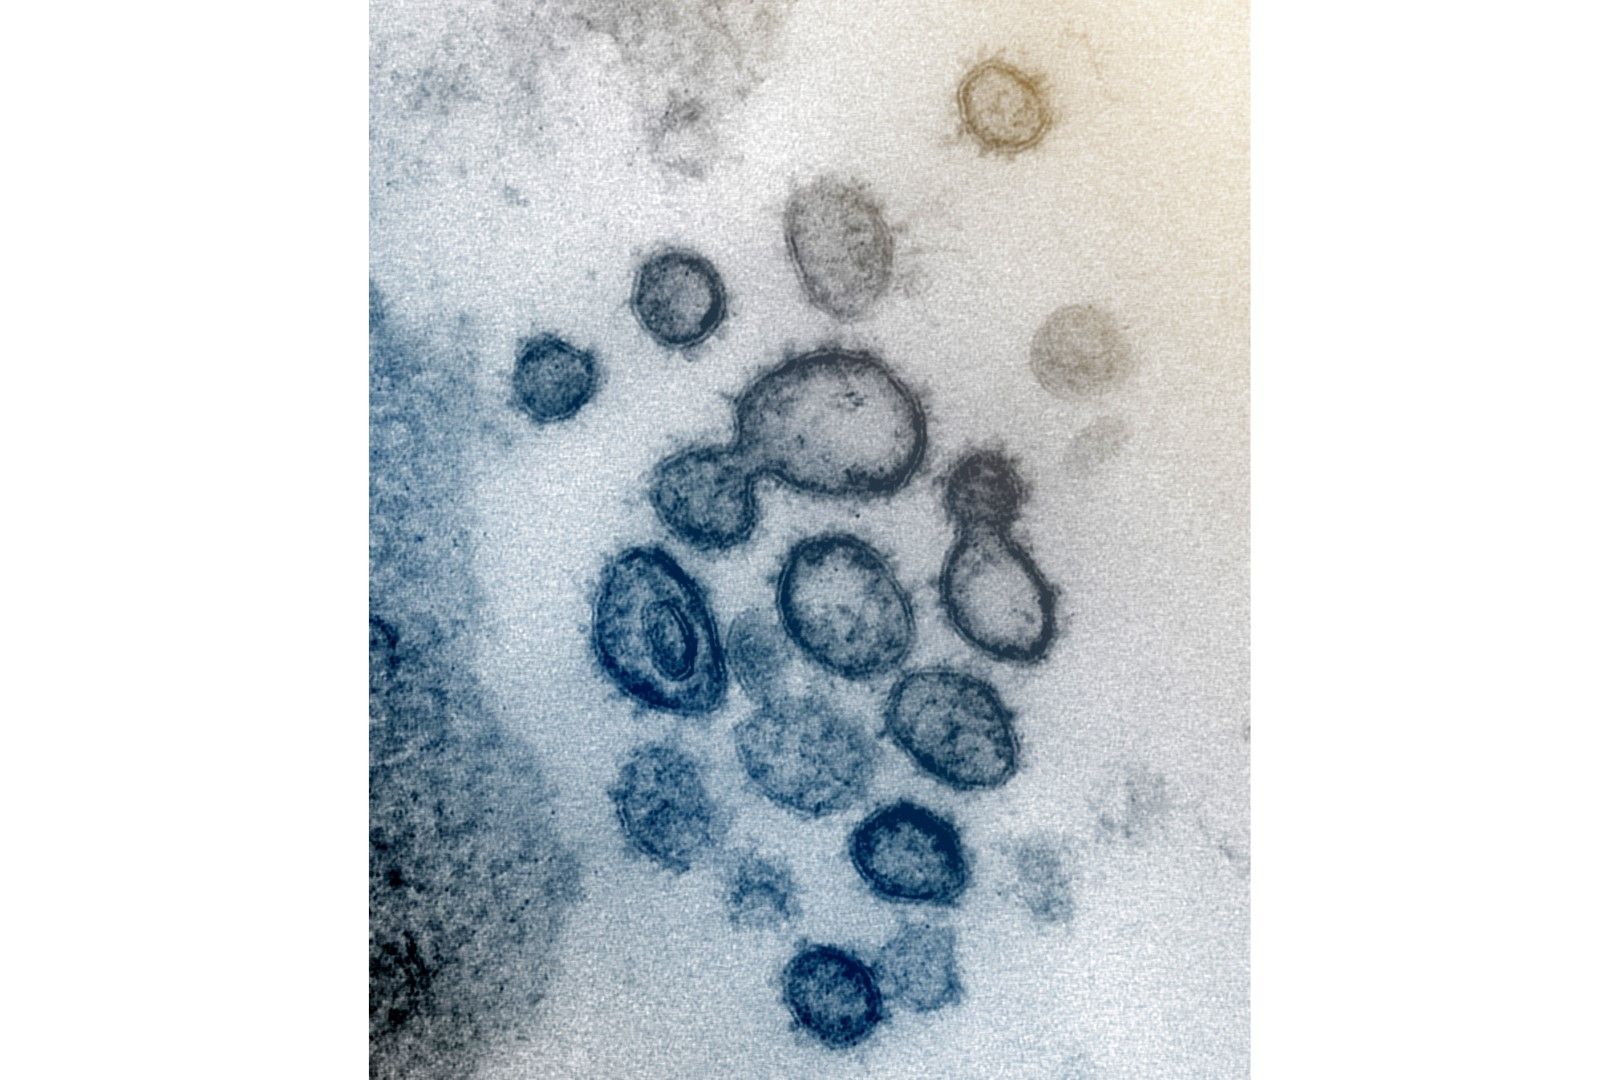 Недатирано изображение от електронен микроскоп, предоставено от американския Национален институти по здравеопазване през февруари 2020 г., показва новия коронавирус SARS-CoV-2. Известен също като 2019-nCoV, вирусът причинява COVID-19